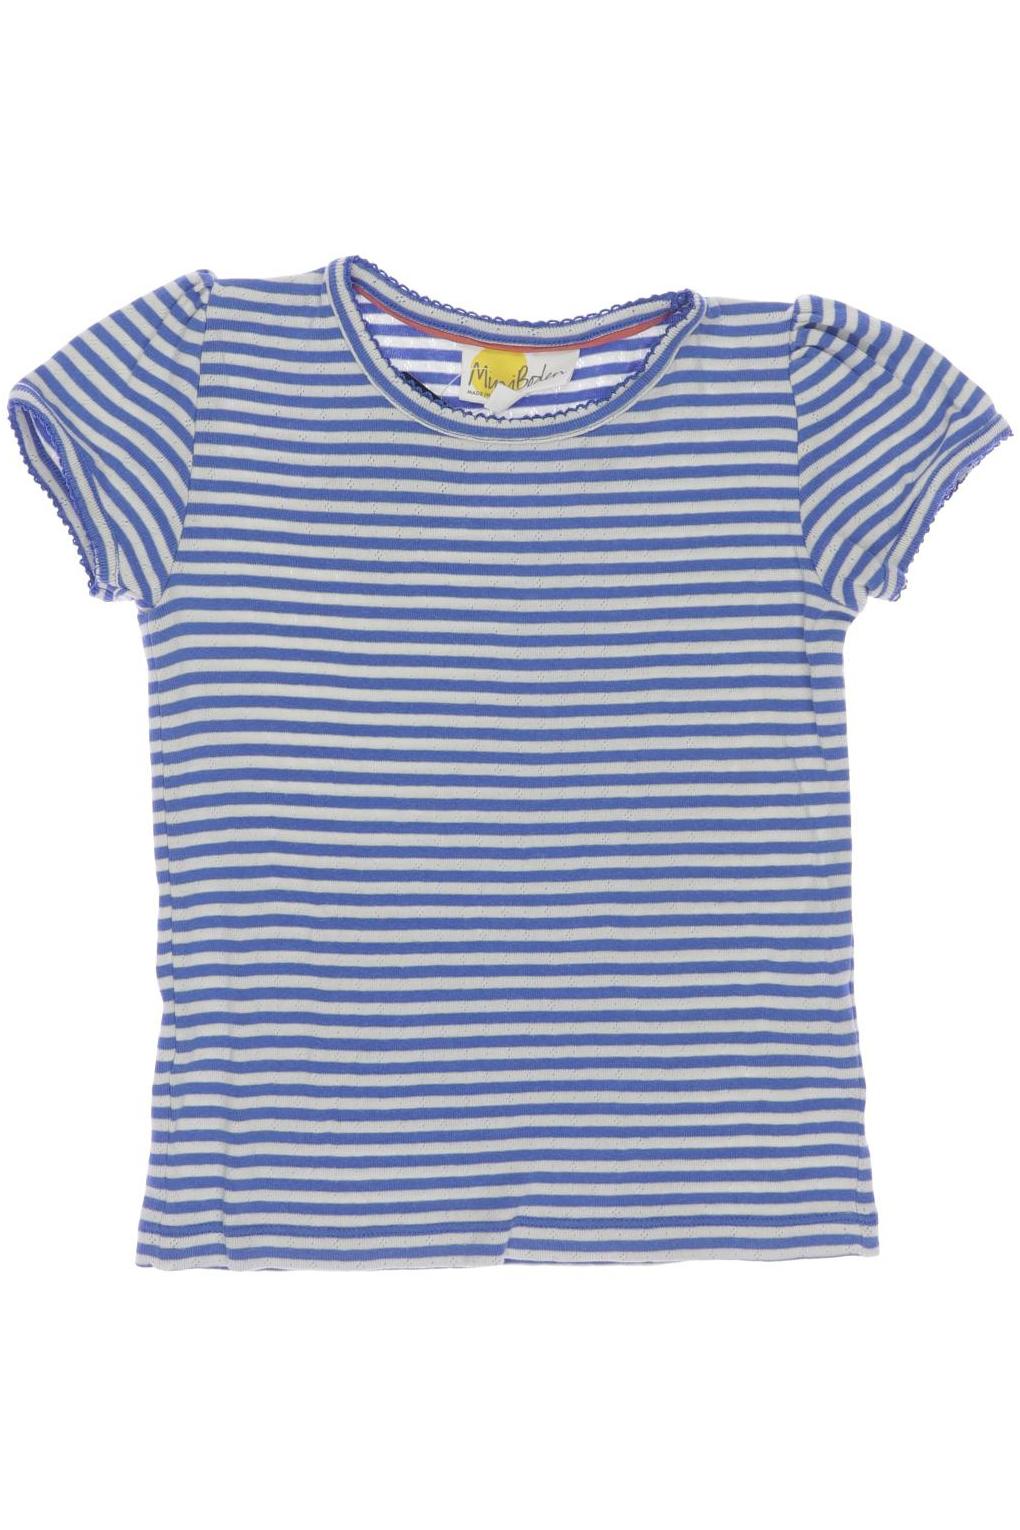 Mini Boden Damen T-Shirt, blau, Gr. 128 von Mini Boden